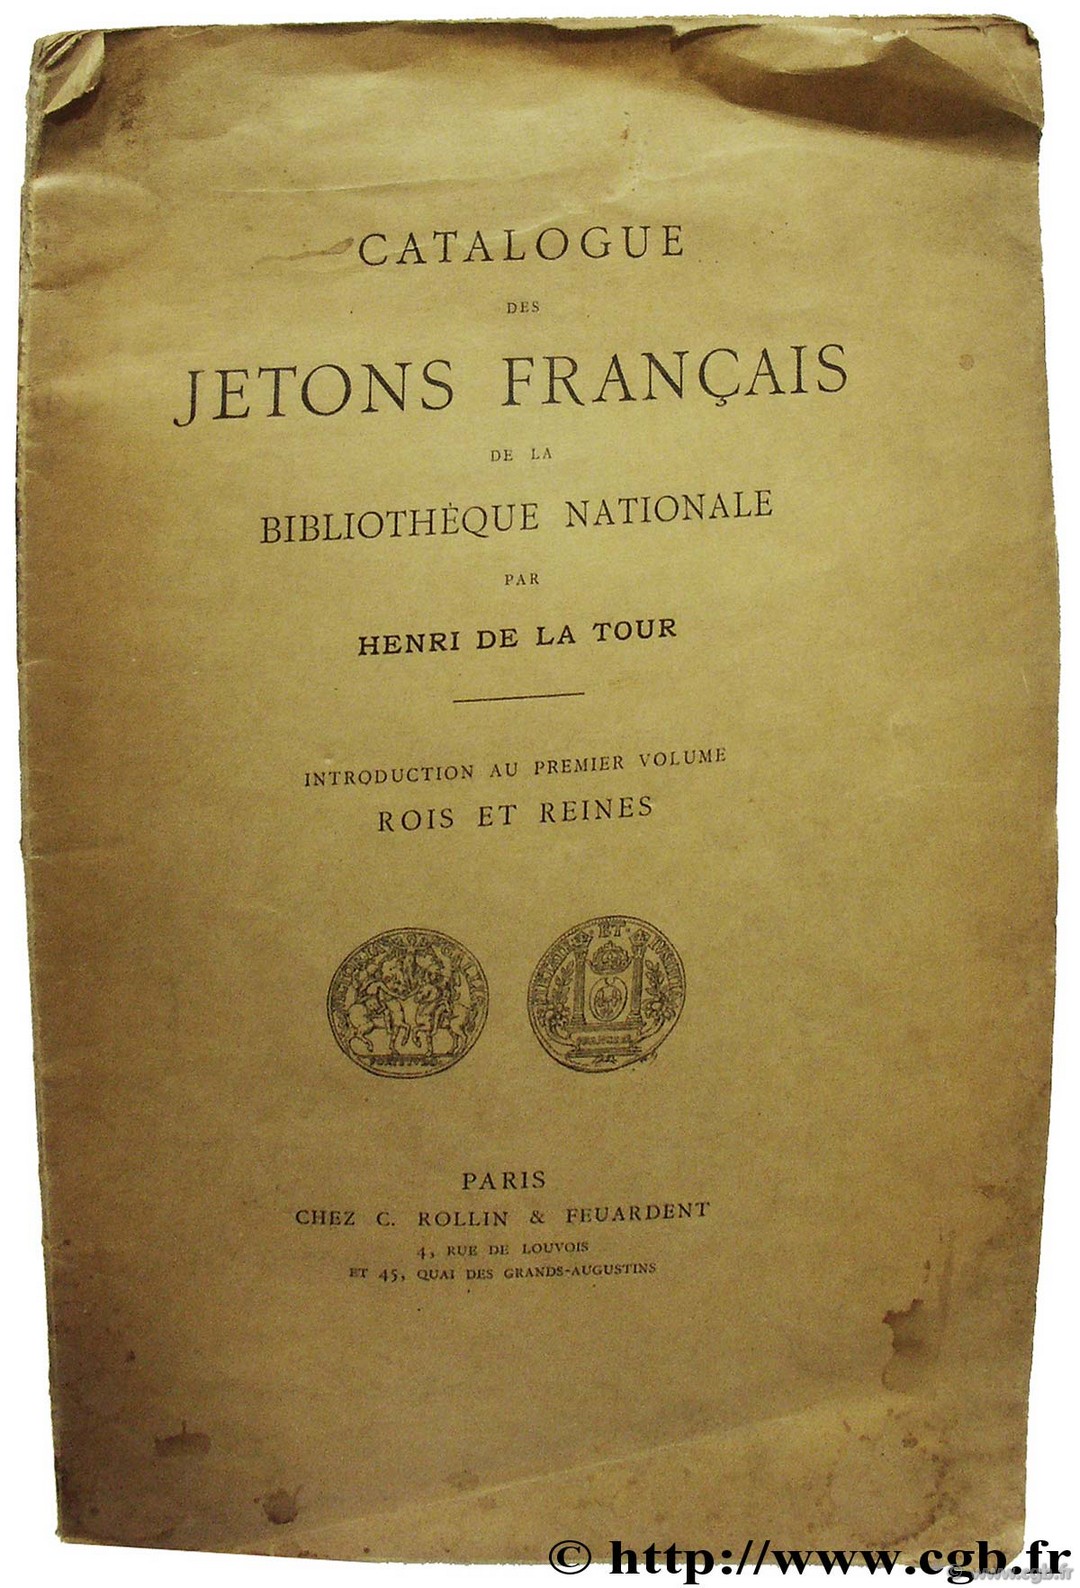 Introduction au premier volume Rois et Reines de France La TOUR H. de